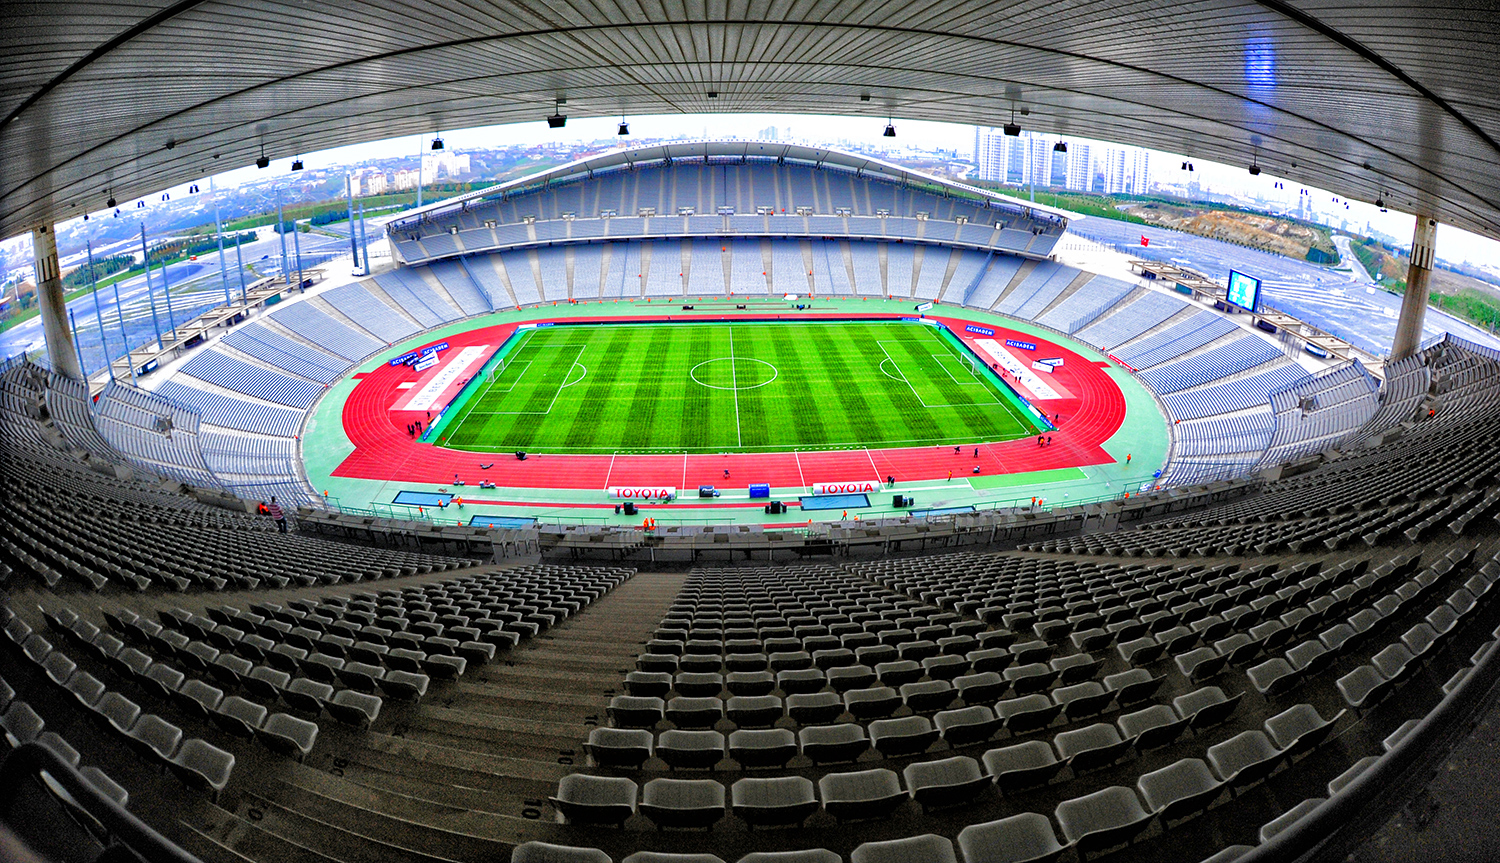 Sân vận động Olympic Ataturk là sân vận động lớn nhất ở Thổ Nhĩ Kỳ